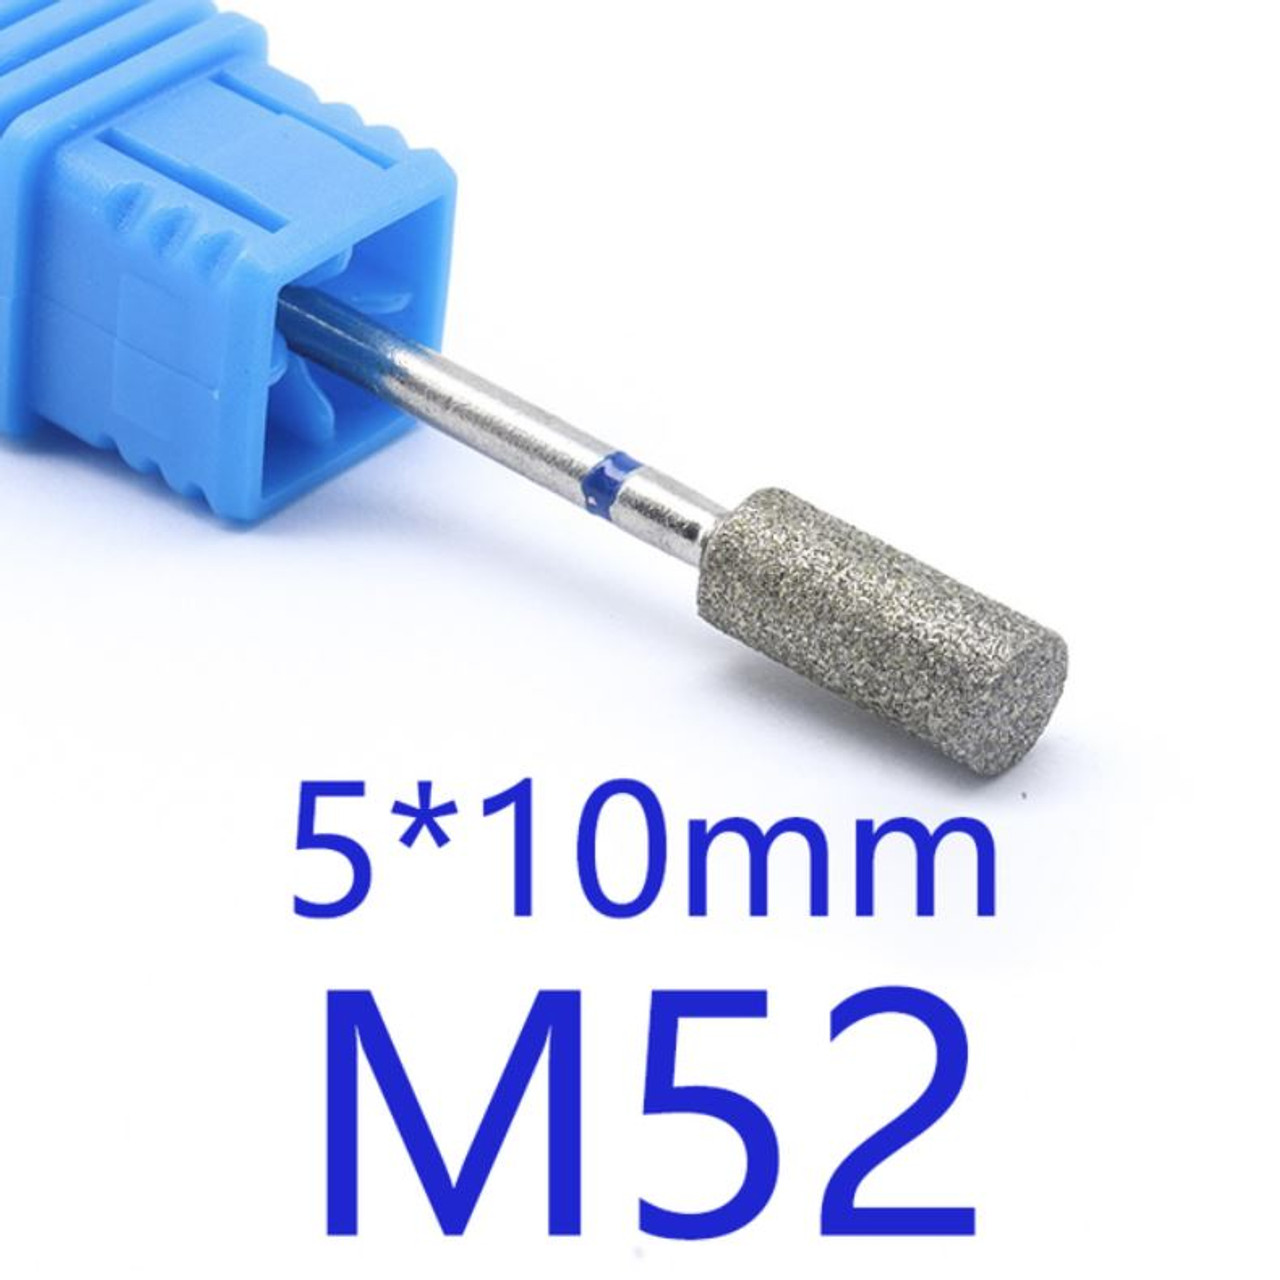 NDi beauty Diamond Drill Bit - 3/32 shank (MEDIUM) - M52